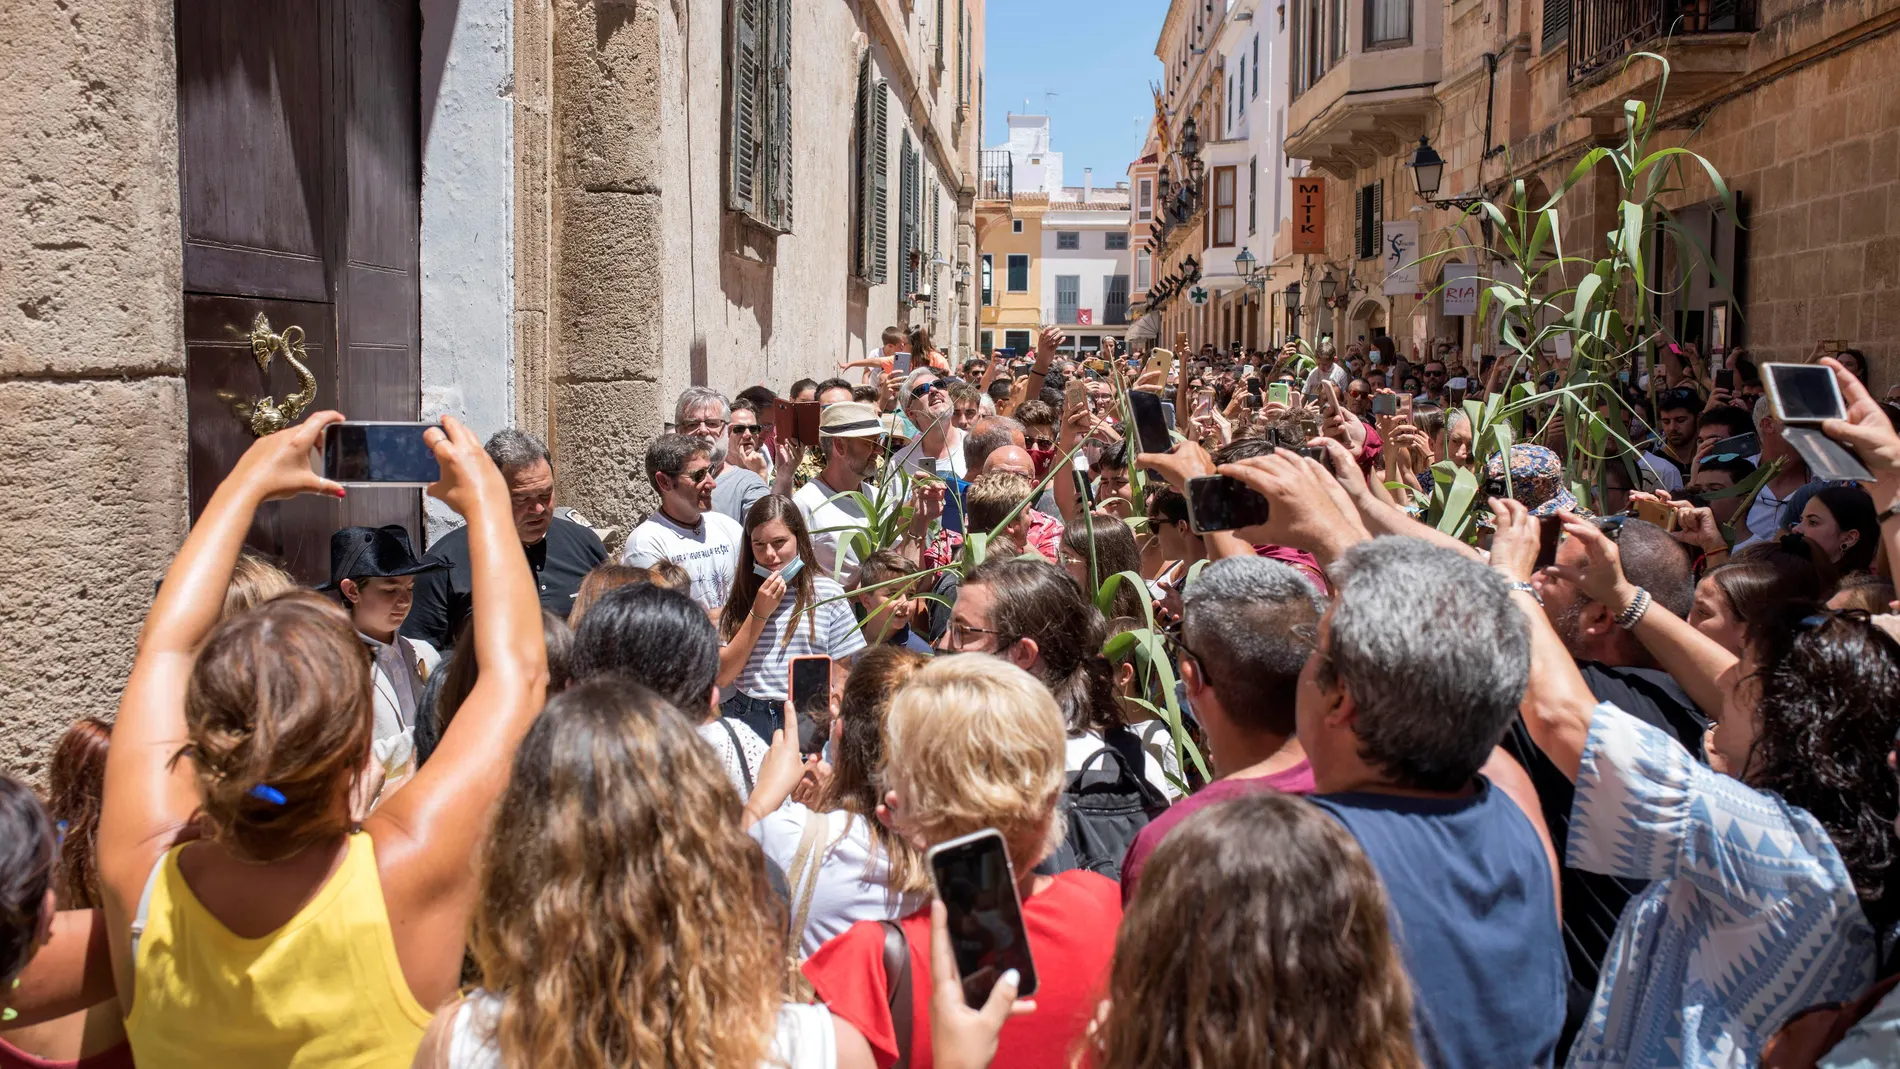 Celebración espontánea de la fiesta de San Juan en Ciutadella, Menorca, festejo suspendido por el Ayuntamiento y en el que se han producido algunas aglomeraciones. EFE/ David Arquimbau Sintes